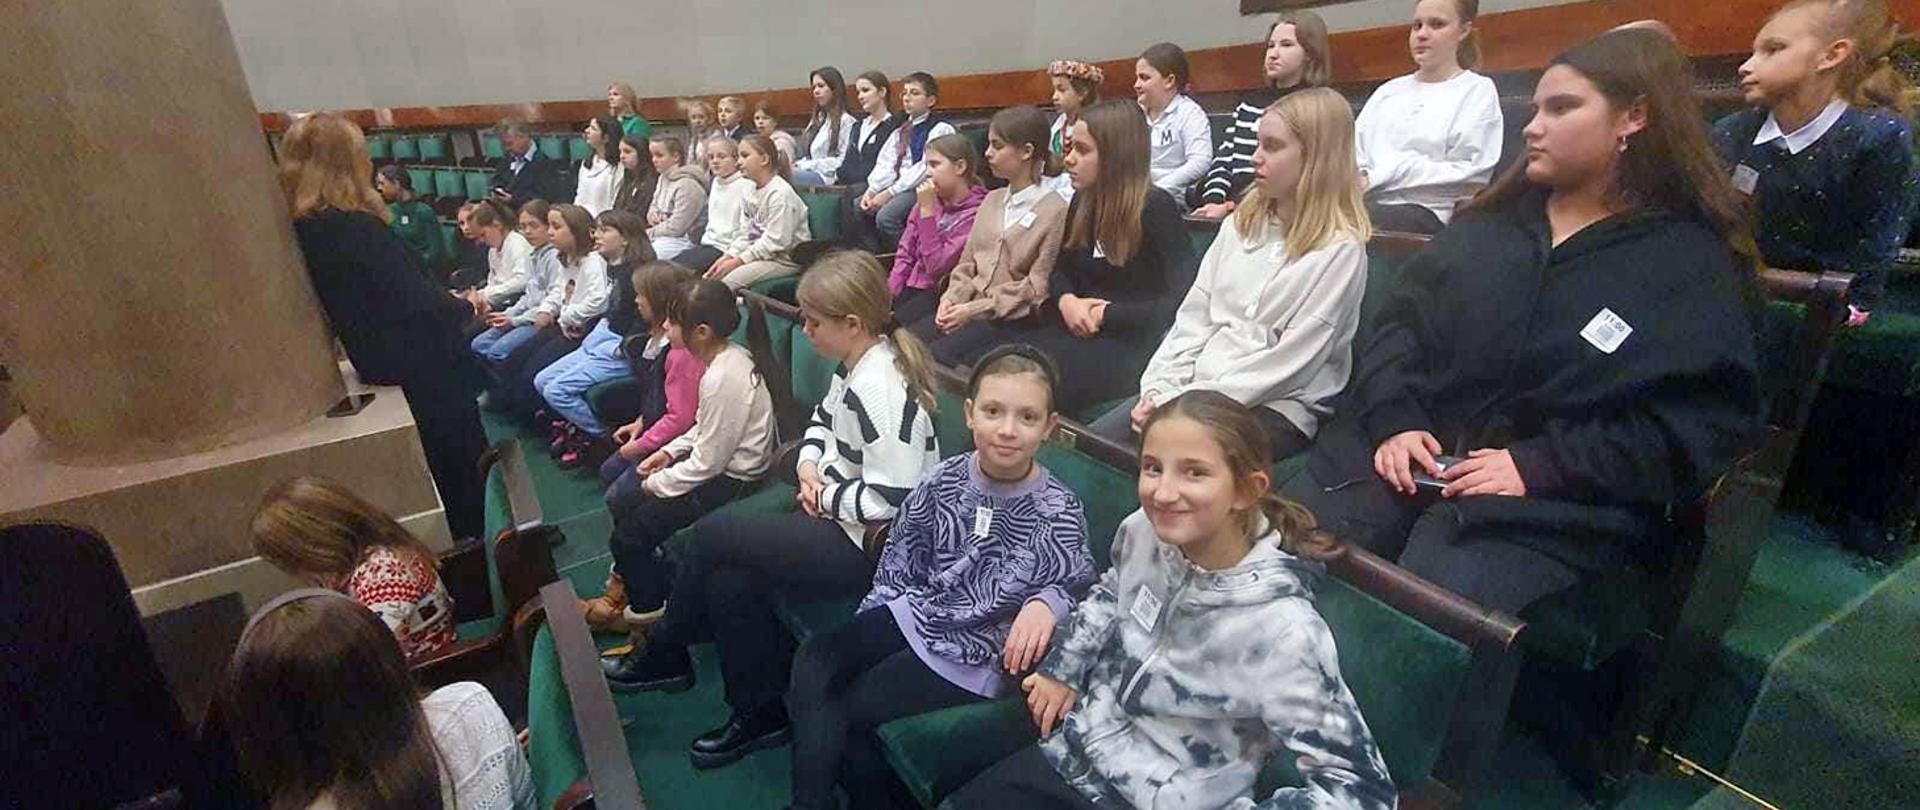 Grupa dzieci siedząca na zielonych krzesłach w Sejmie